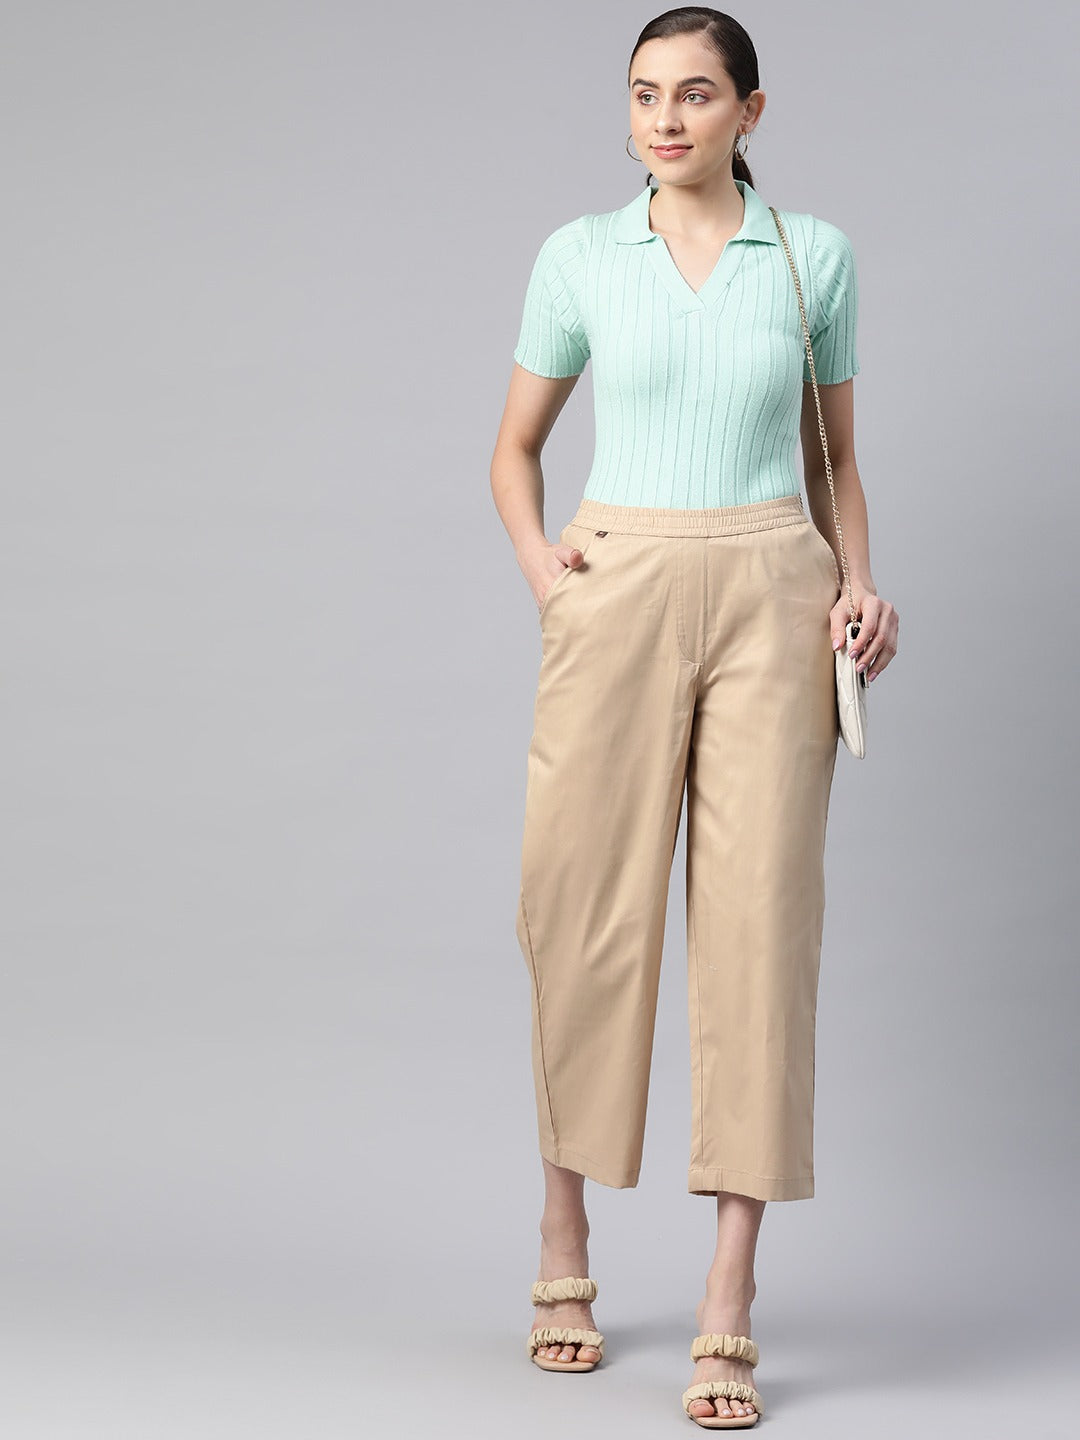 Cotton Lycra Fabric Beige Color Trouser